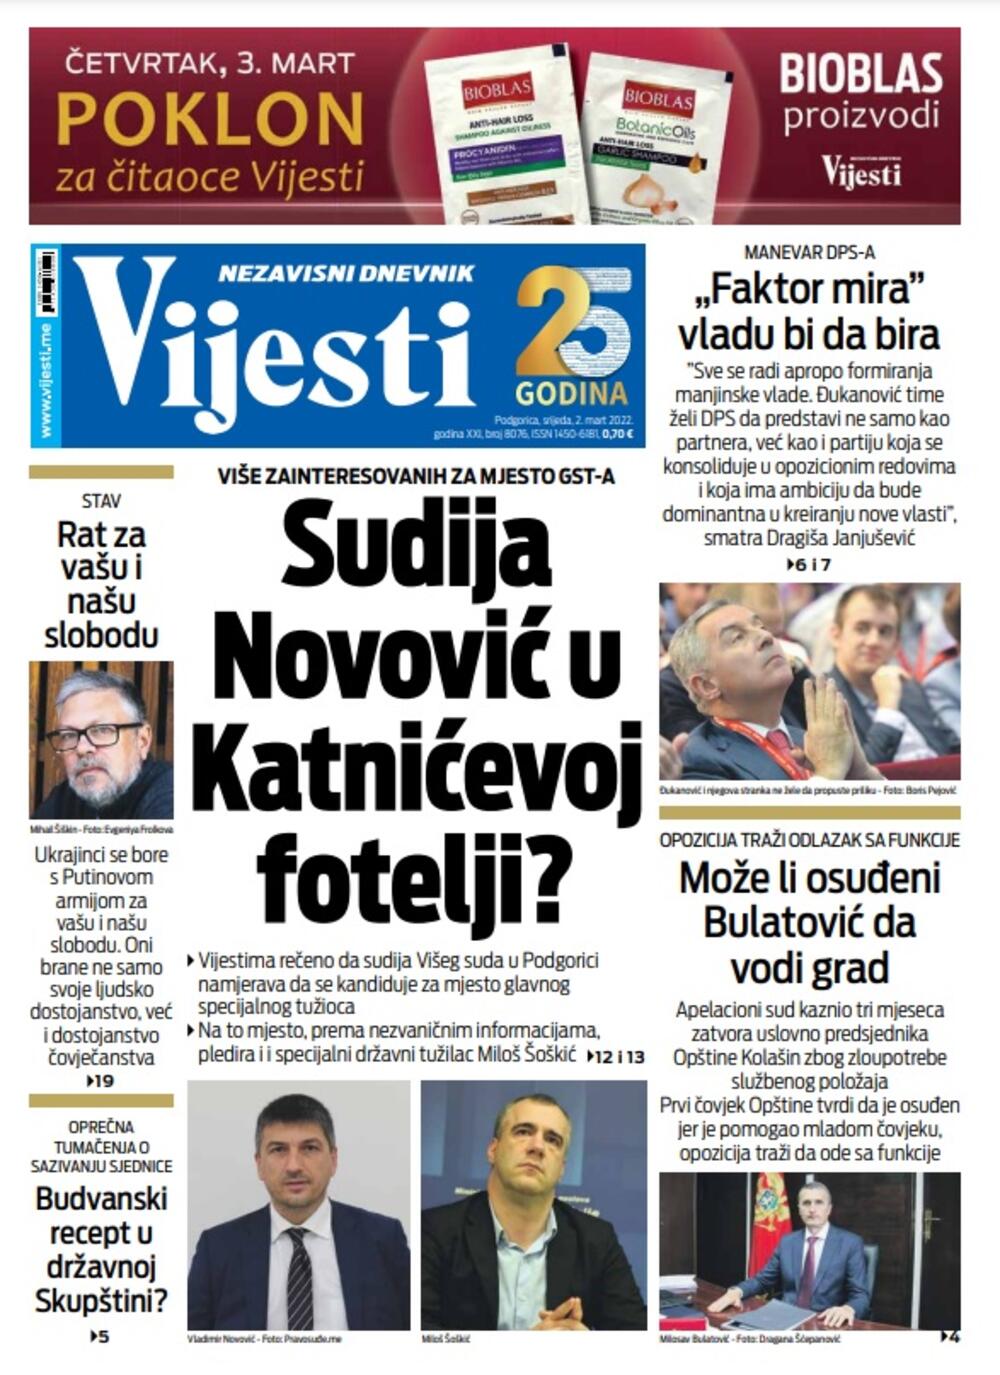 Naslovna strana "Vijesti" za 2. mart 2022., Foto: Vijesti